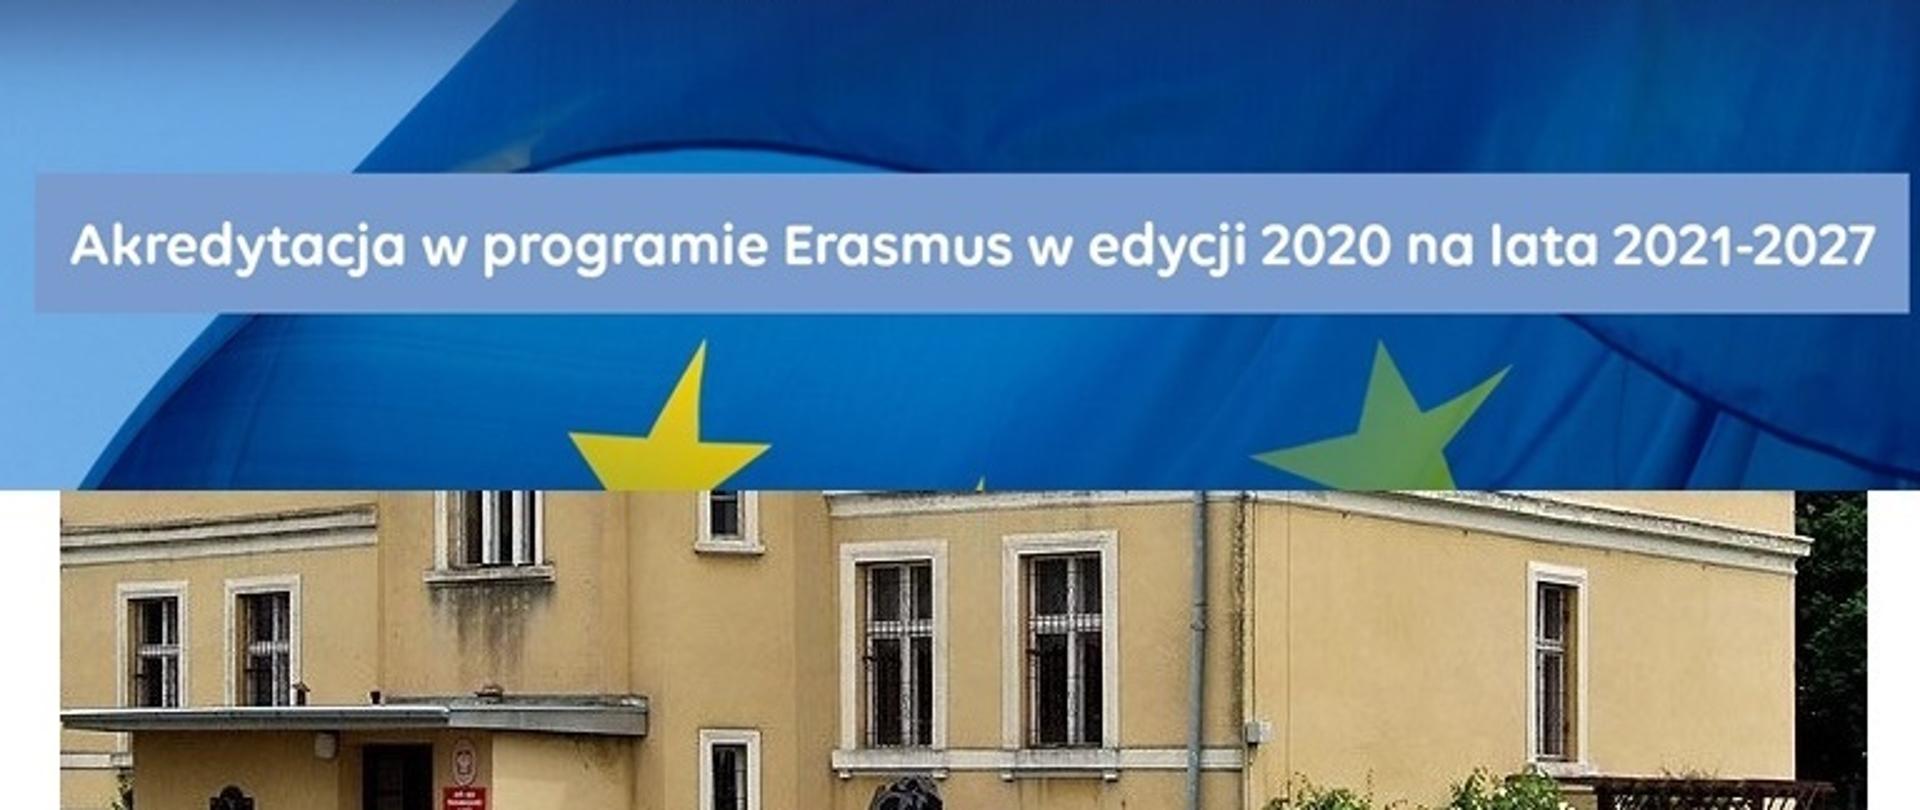 Zespół Szkół Ponadpodstawowych w Międzyborzu z akredytacją w programie Erasmus